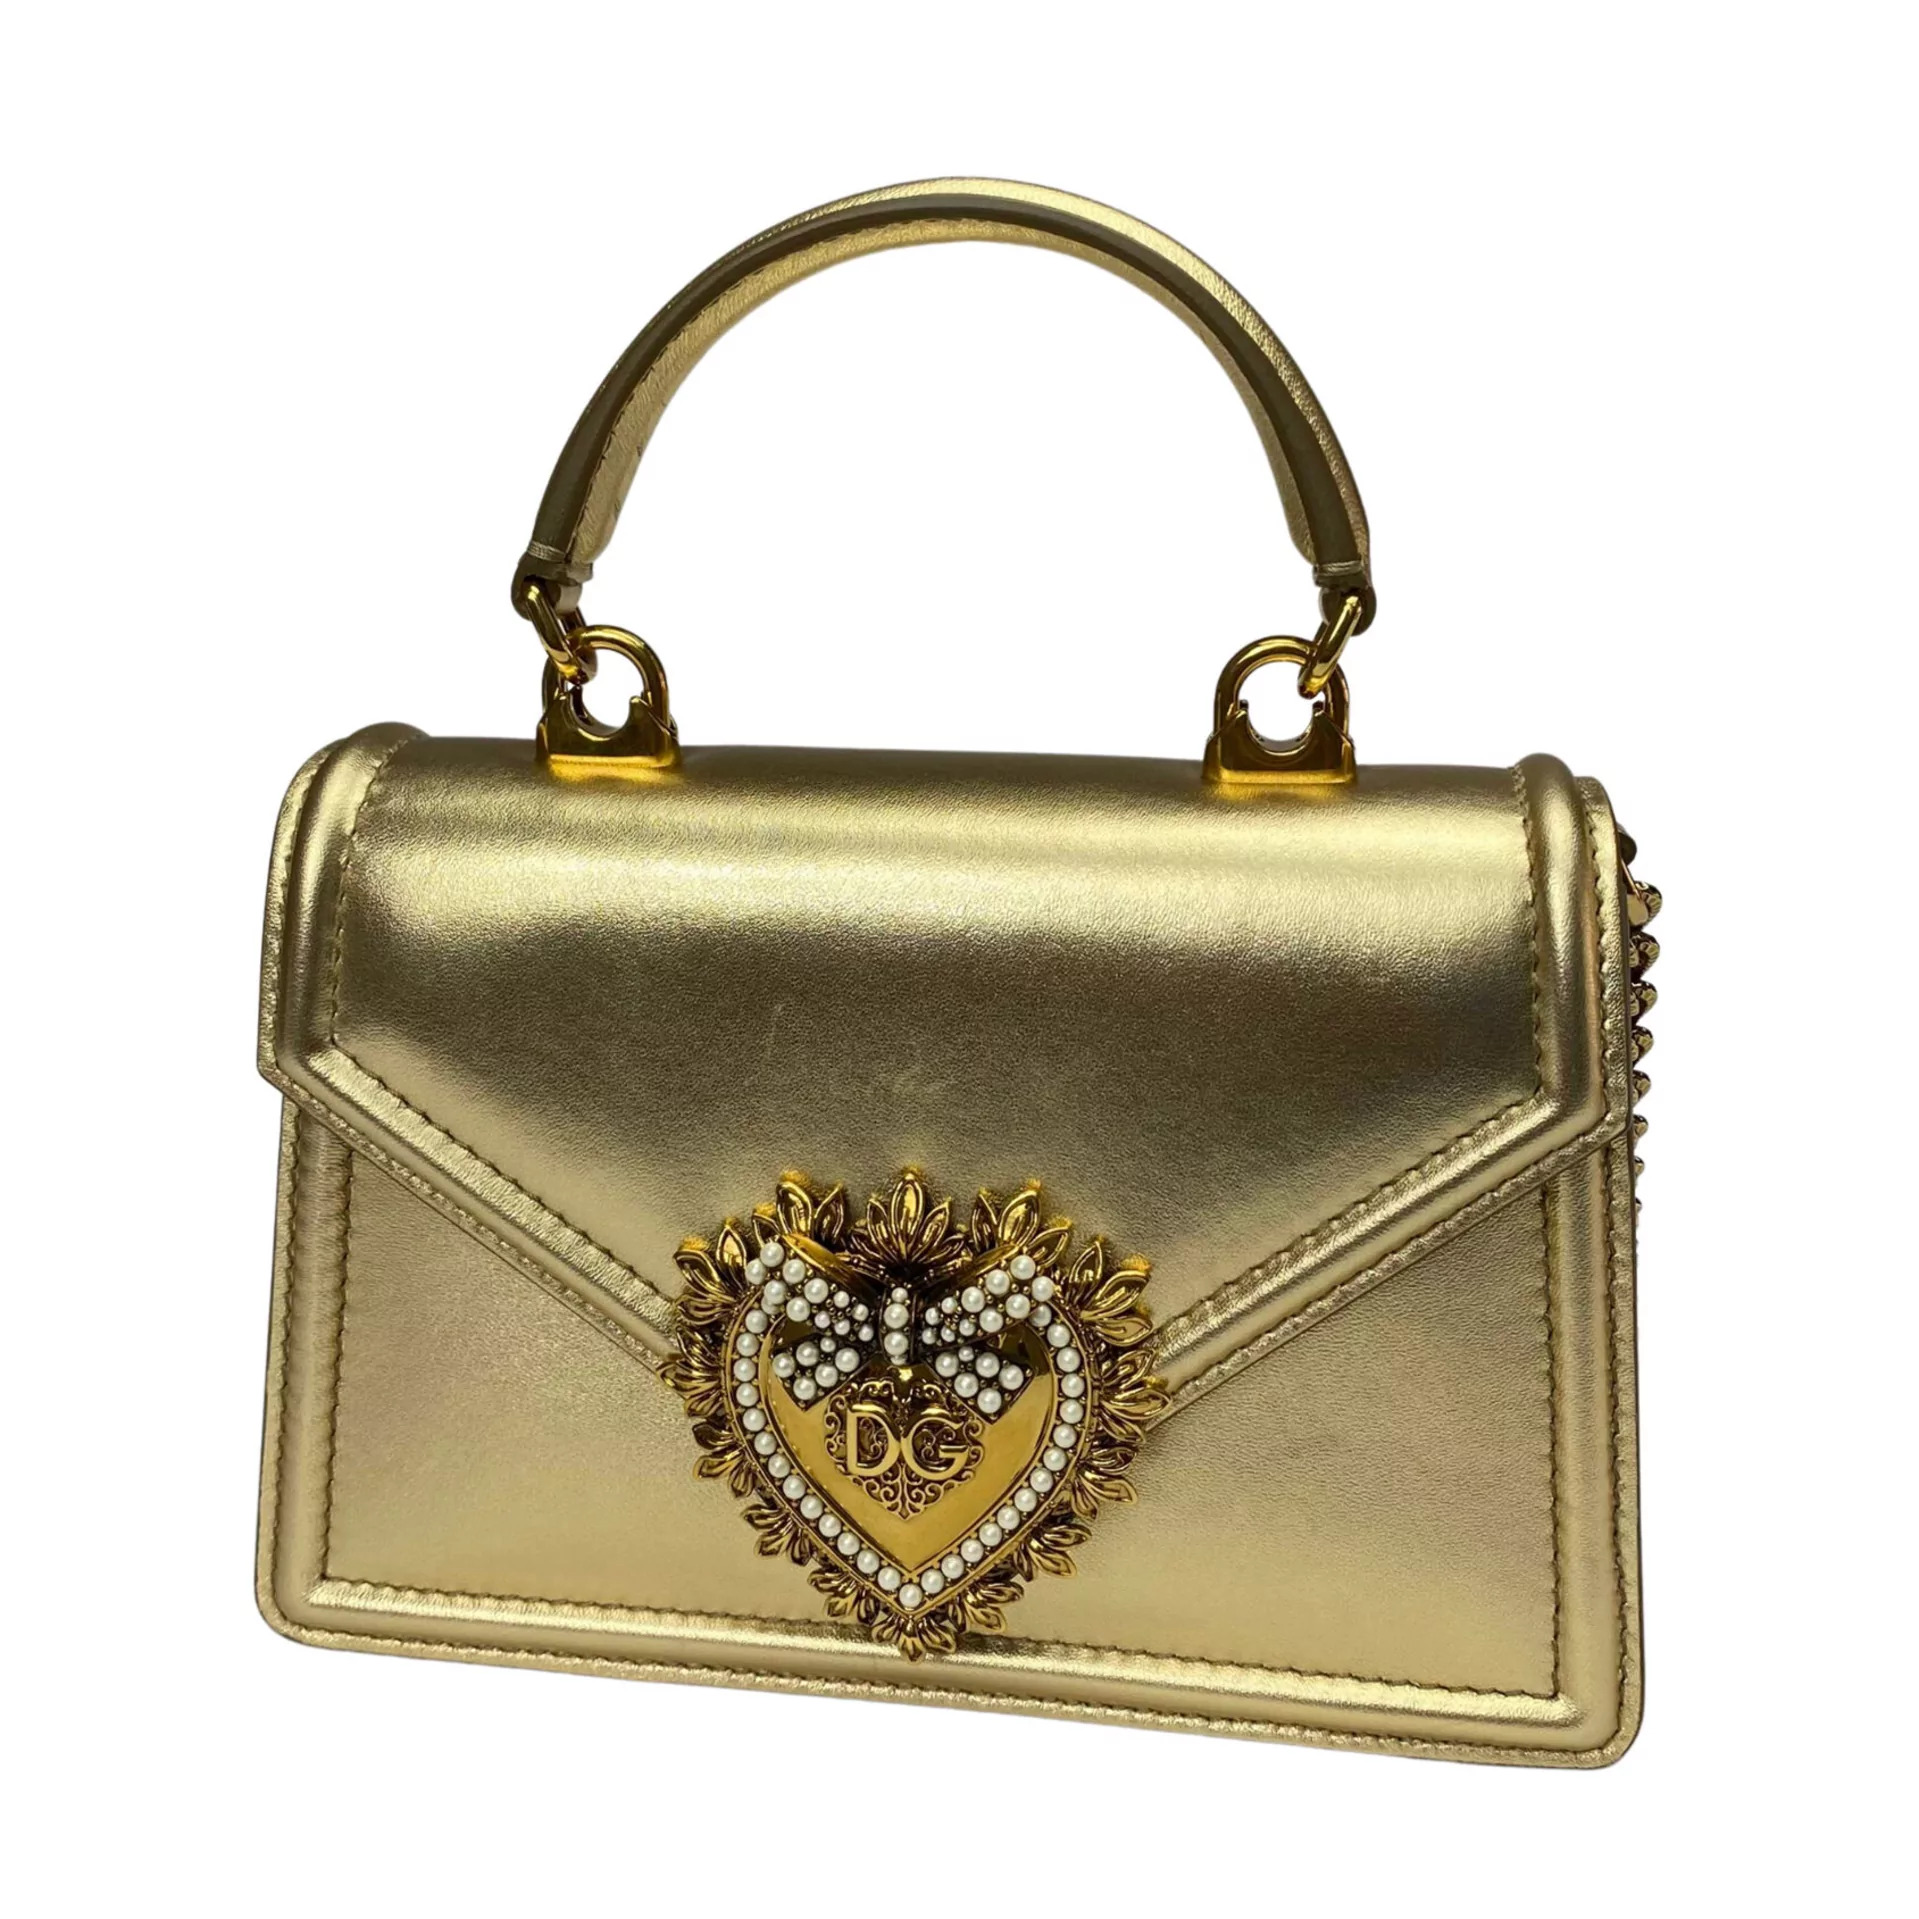 Bolsa Dolce & Gabbana Devotion Mini Dourada